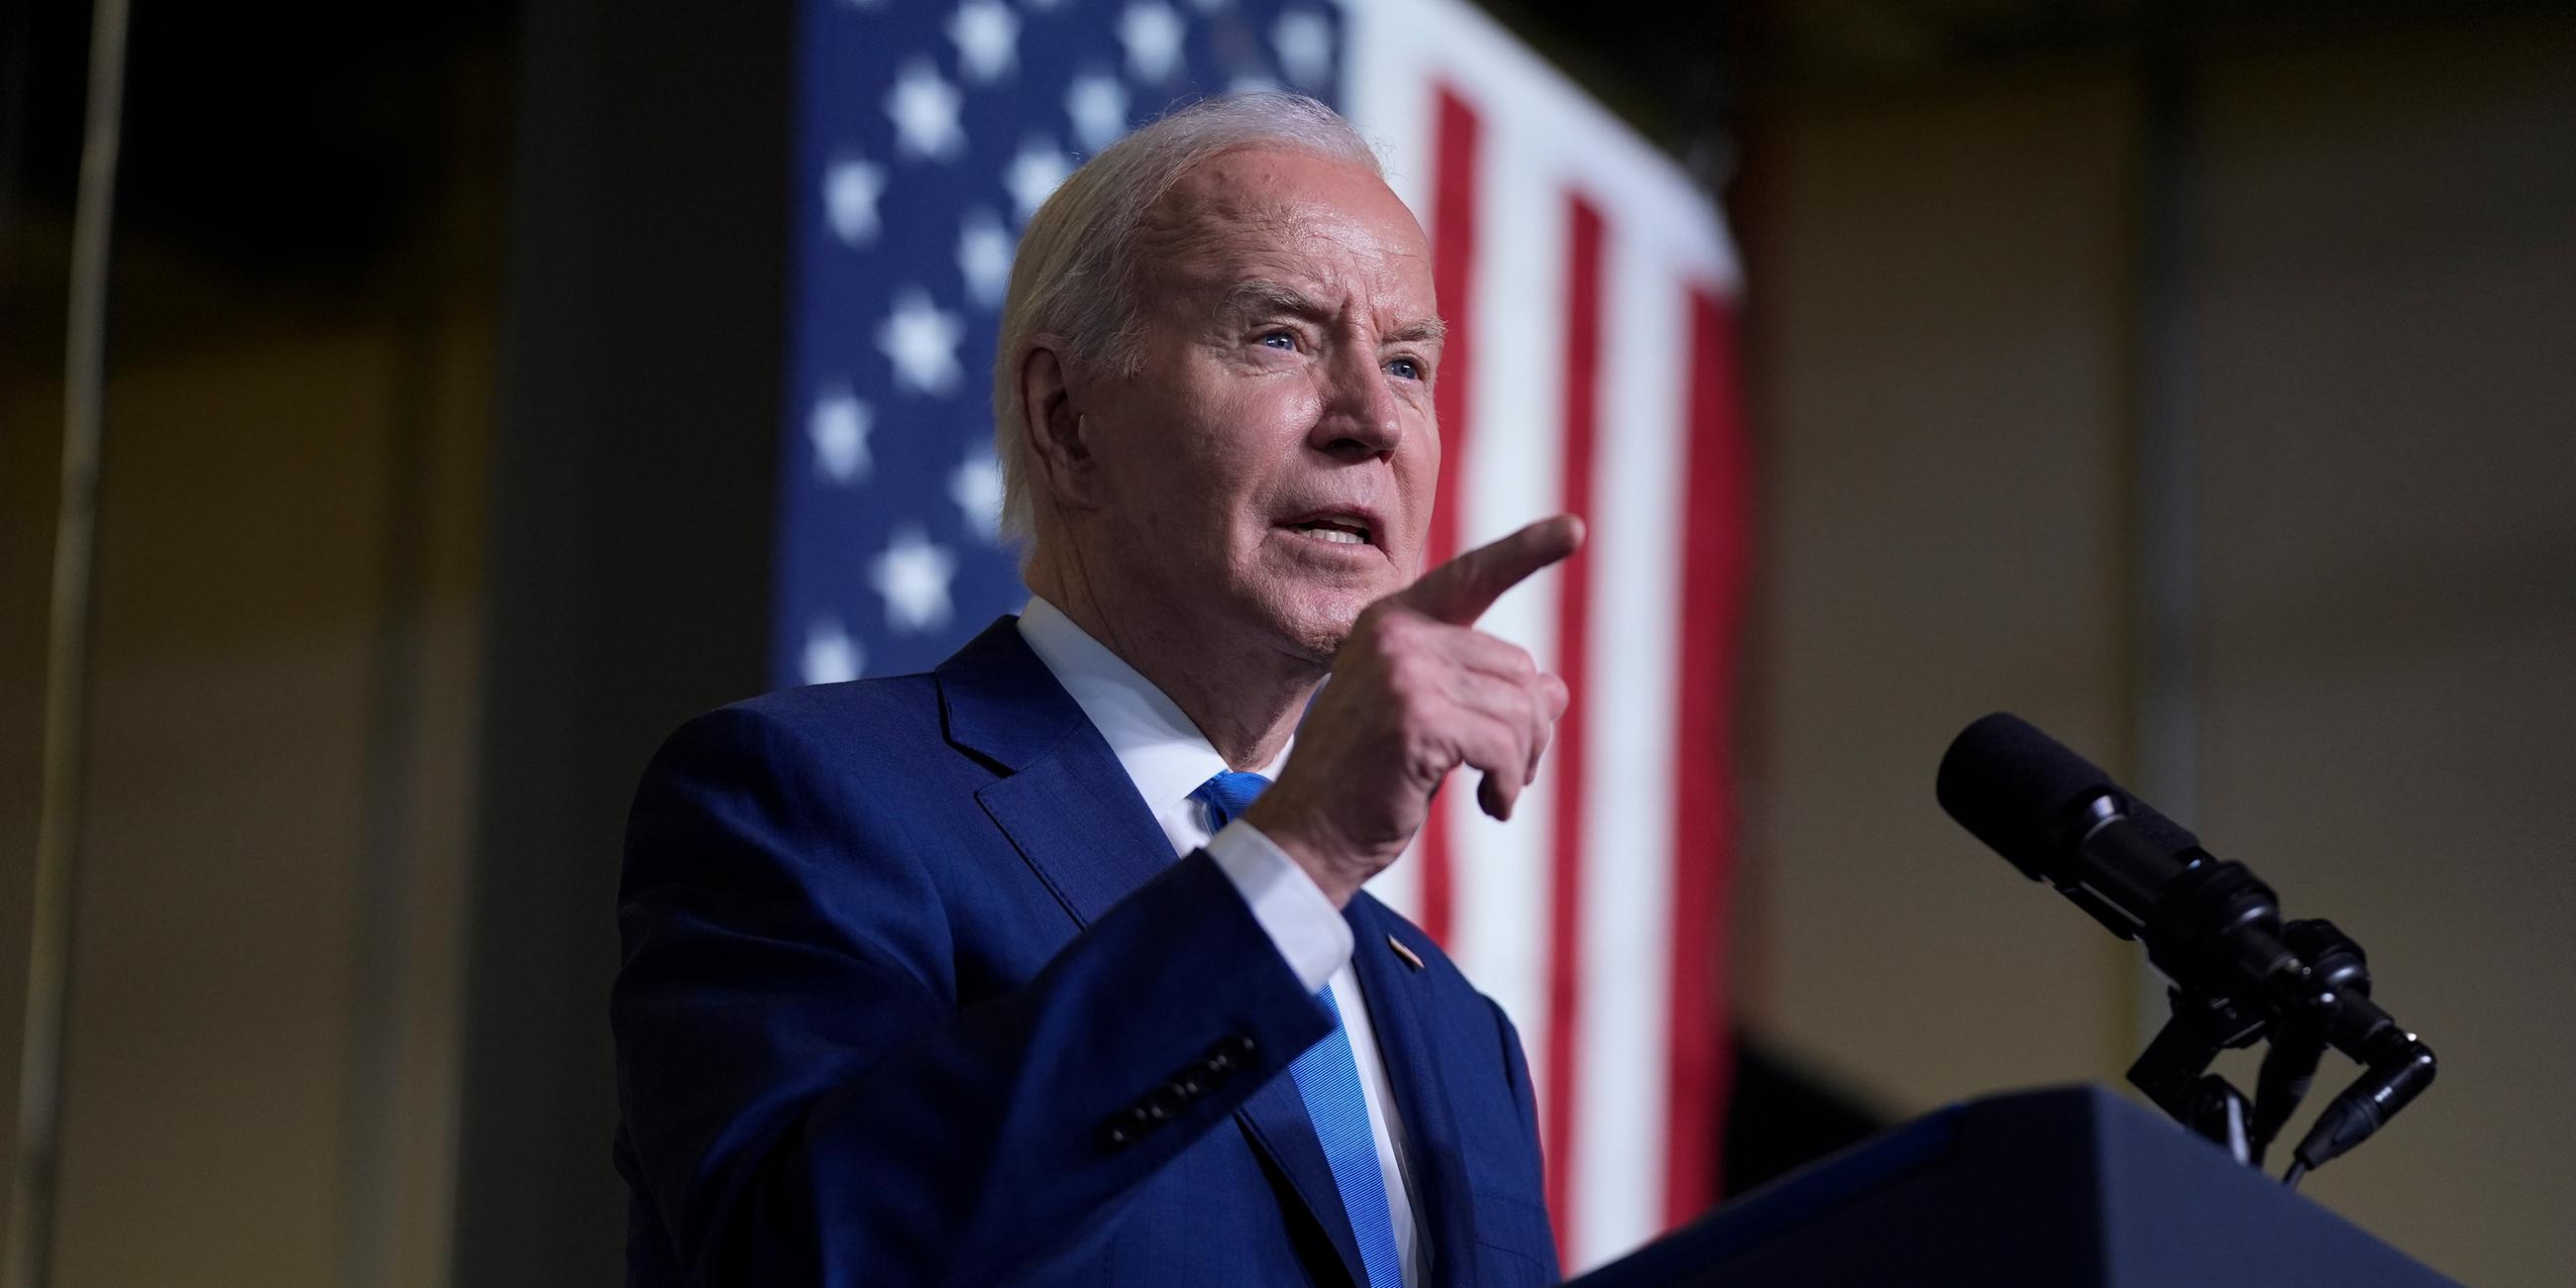 US-Präsident Joe Biden steht mir erhobenem Zeigefinger am Rednerpult im Hintergrund hängt eine US-Flagge.